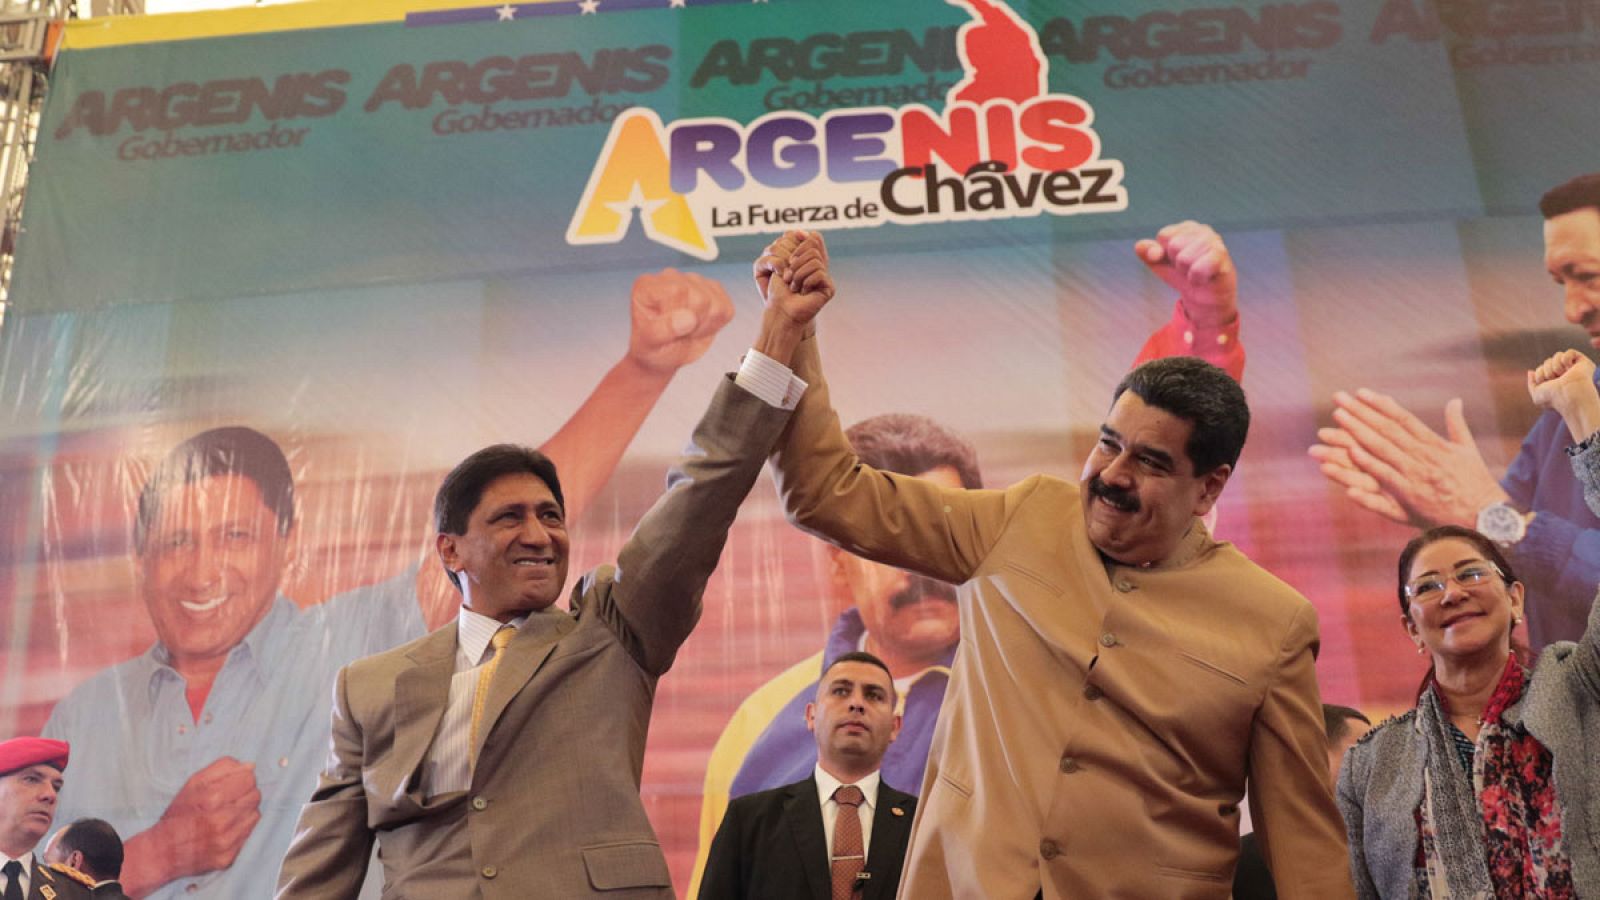 El presidente de Venezuela, Nicolás Maduro (d), participando durante la juramentación del gobernador electo del estado Barinas, Argenis Chávez (i), el viernes,20 de octubre del 2017 en Barinas (Venezuela).